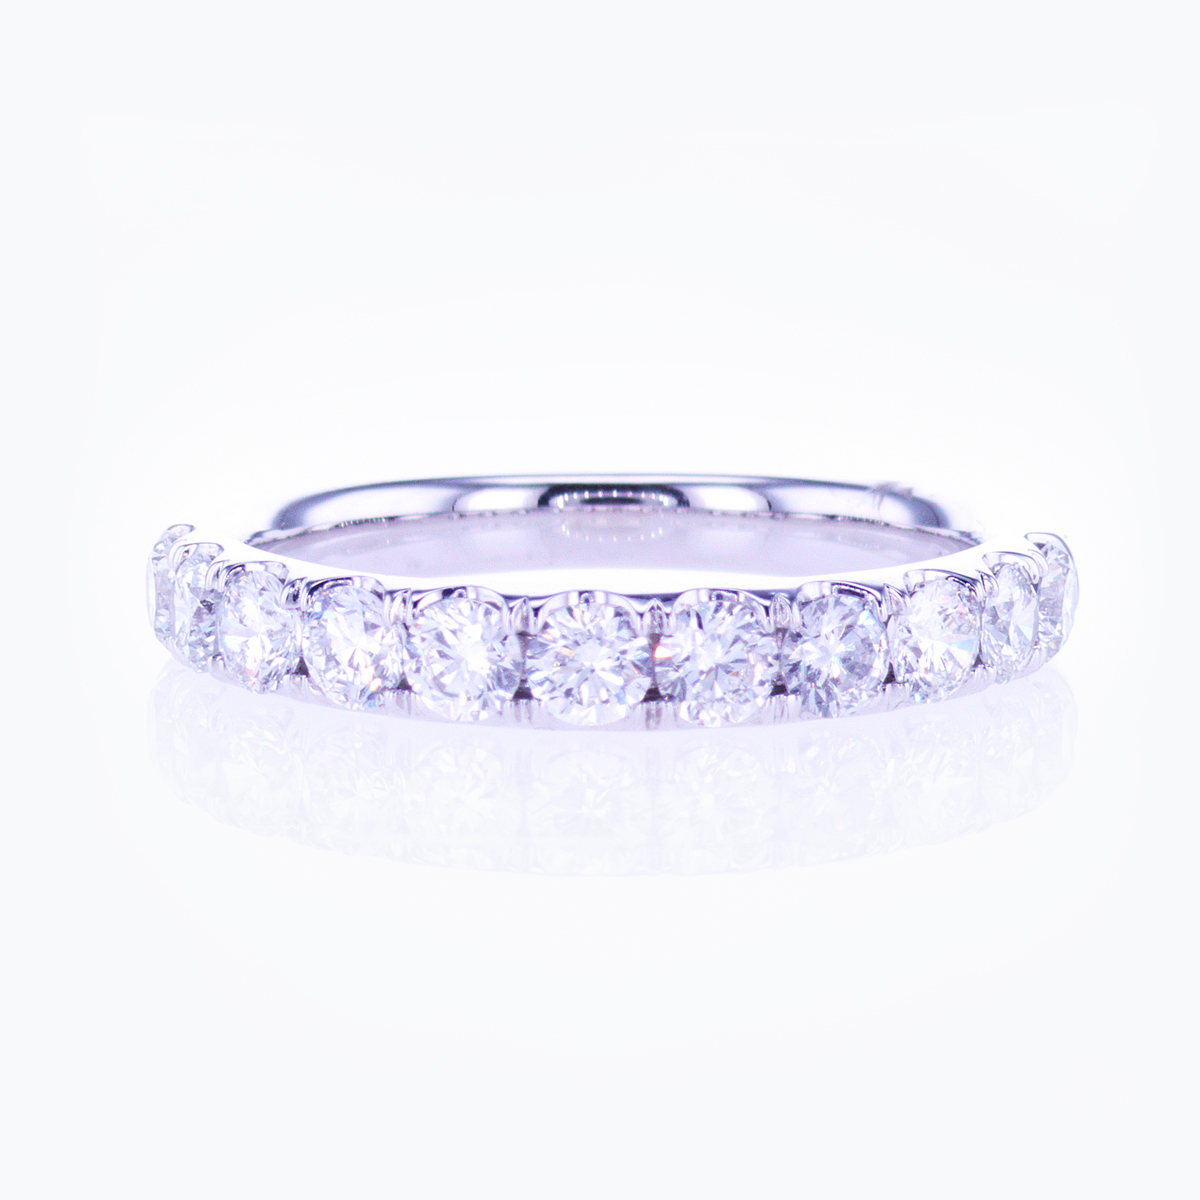 Lab-Grown Diamond Band Ring